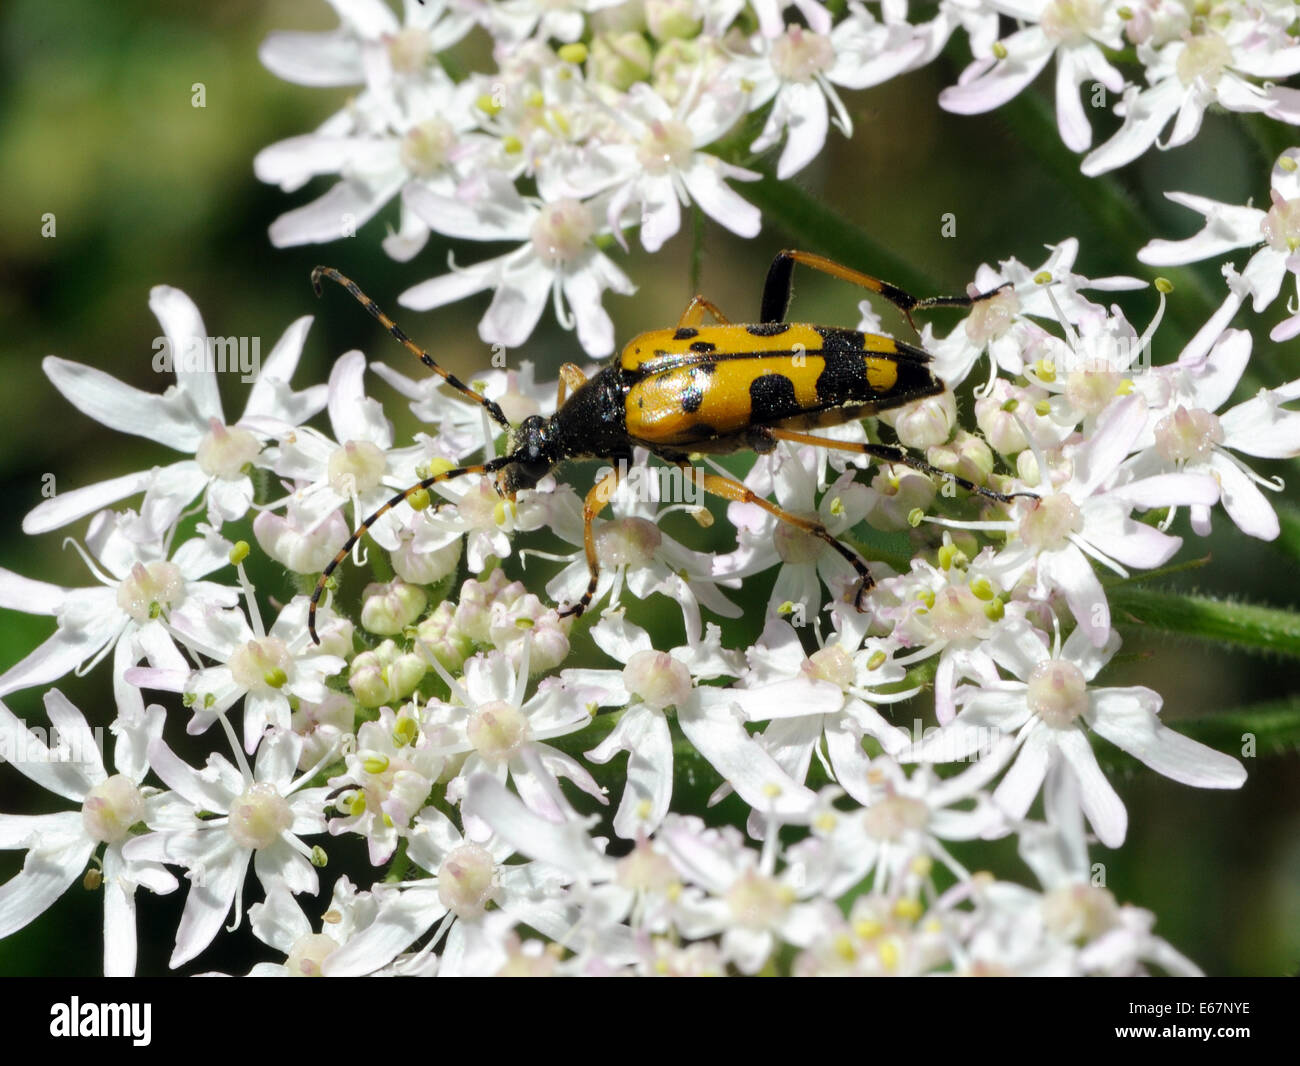 Una naranja y negro escarabajo (cuerno largo Rutpela maculate) se alimenta de una vaca perejil (Anthriscus sylvestris) Cabeza floral. Bedgebury Bosque, Kent, UK. Foto de stock